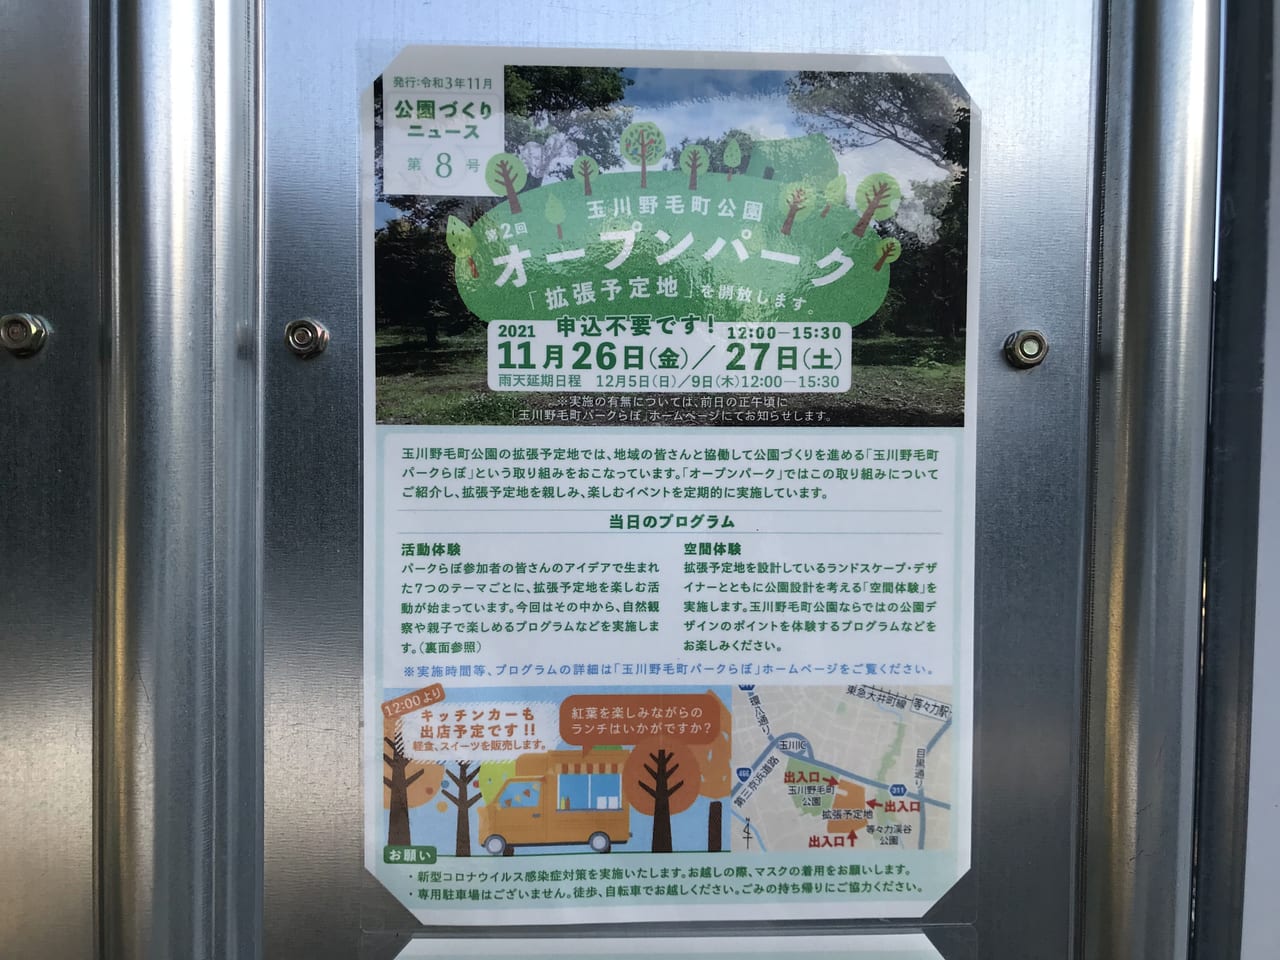 世田谷区玉川野毛町公園の拡張ちが開放される第2回オープンパークが2021年11月26日、27日に開催されます。